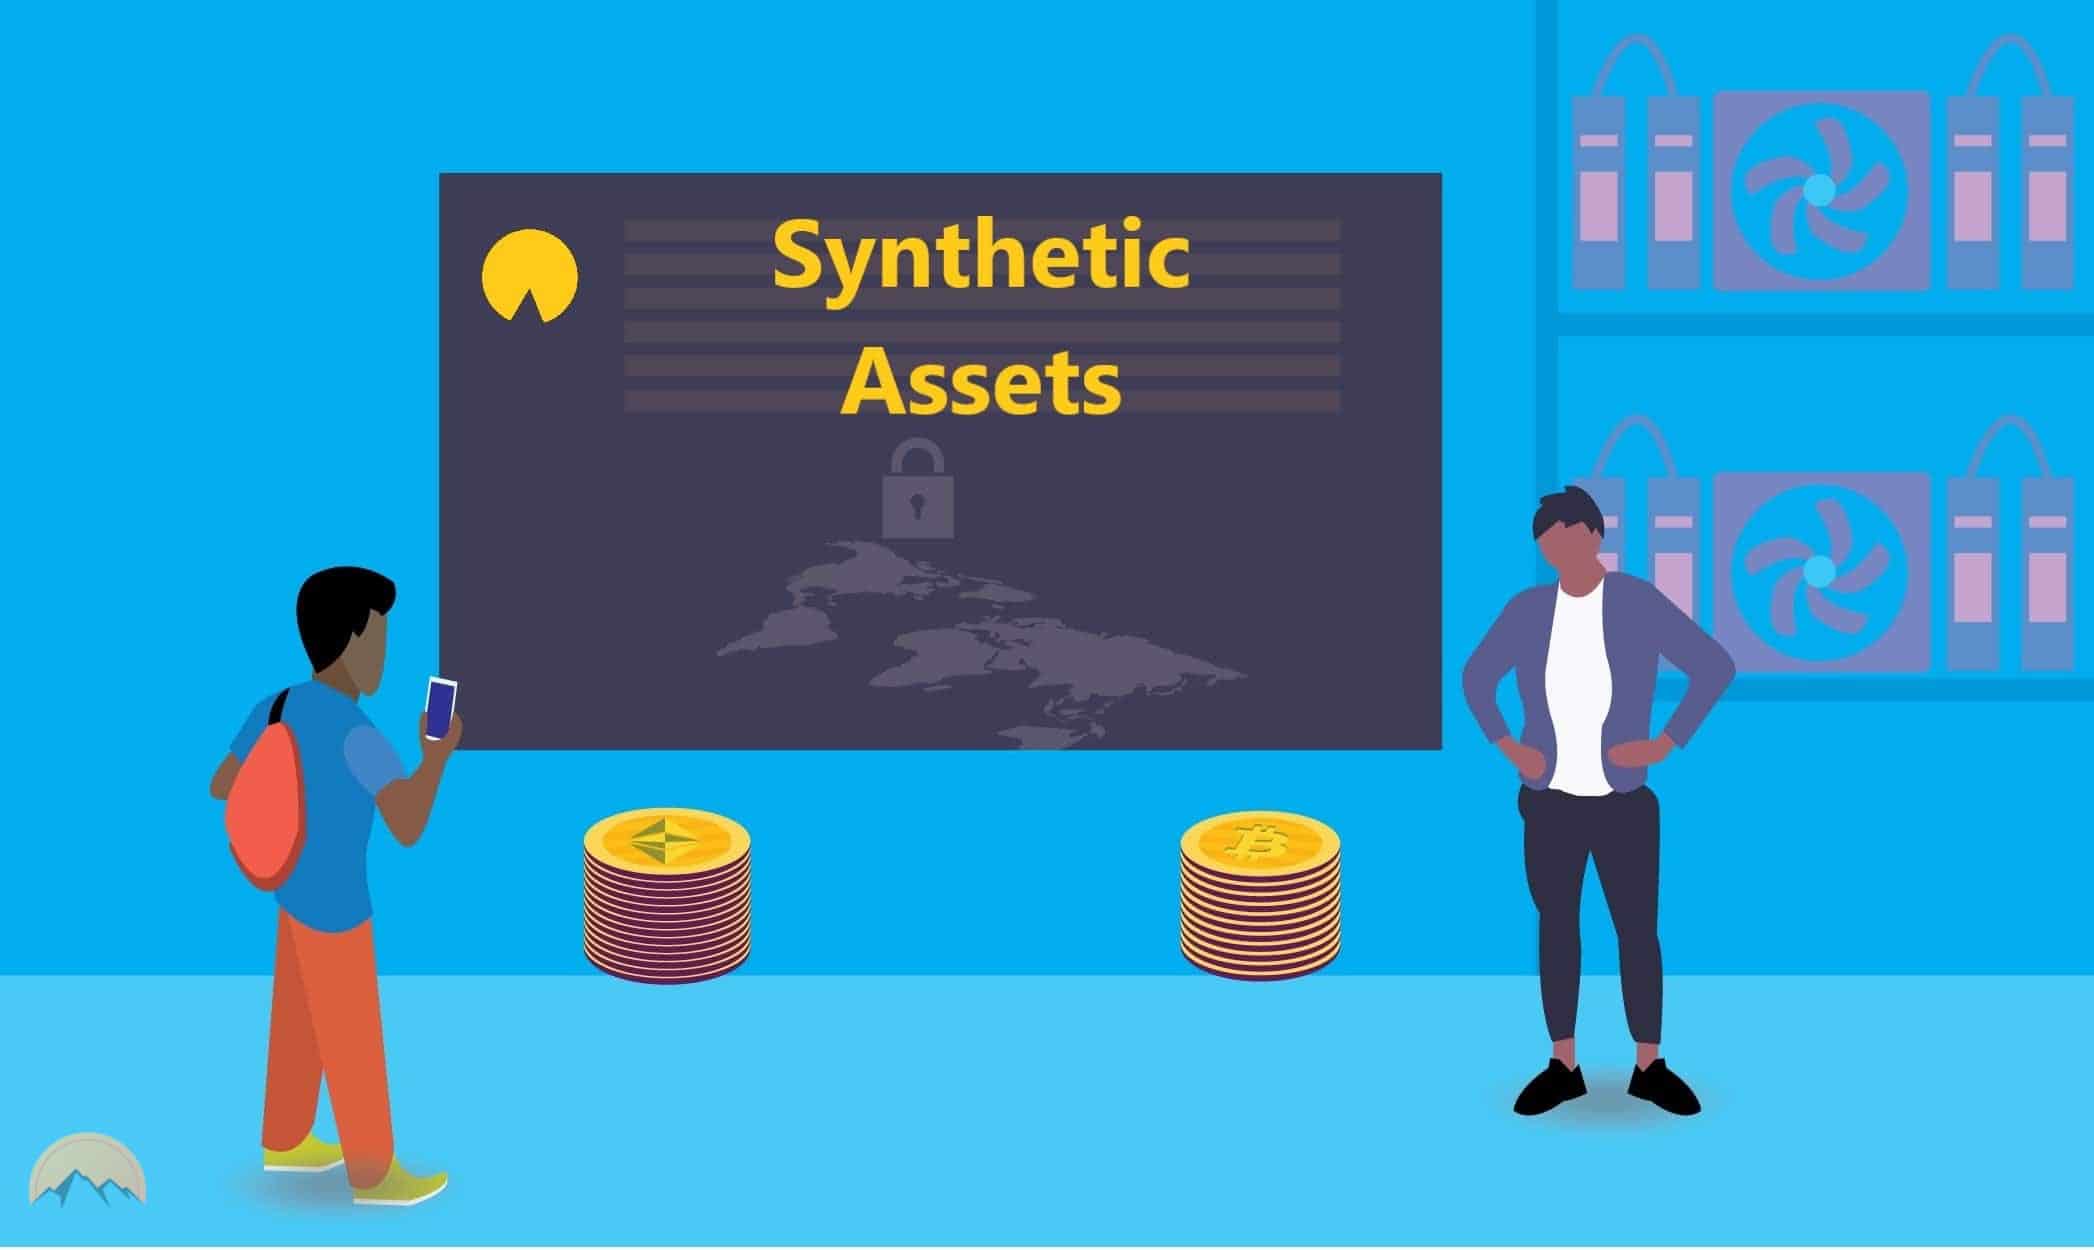 دارایی های مصنوعی چیست؟ معرفی کامل Synthetic Assets در دیفای